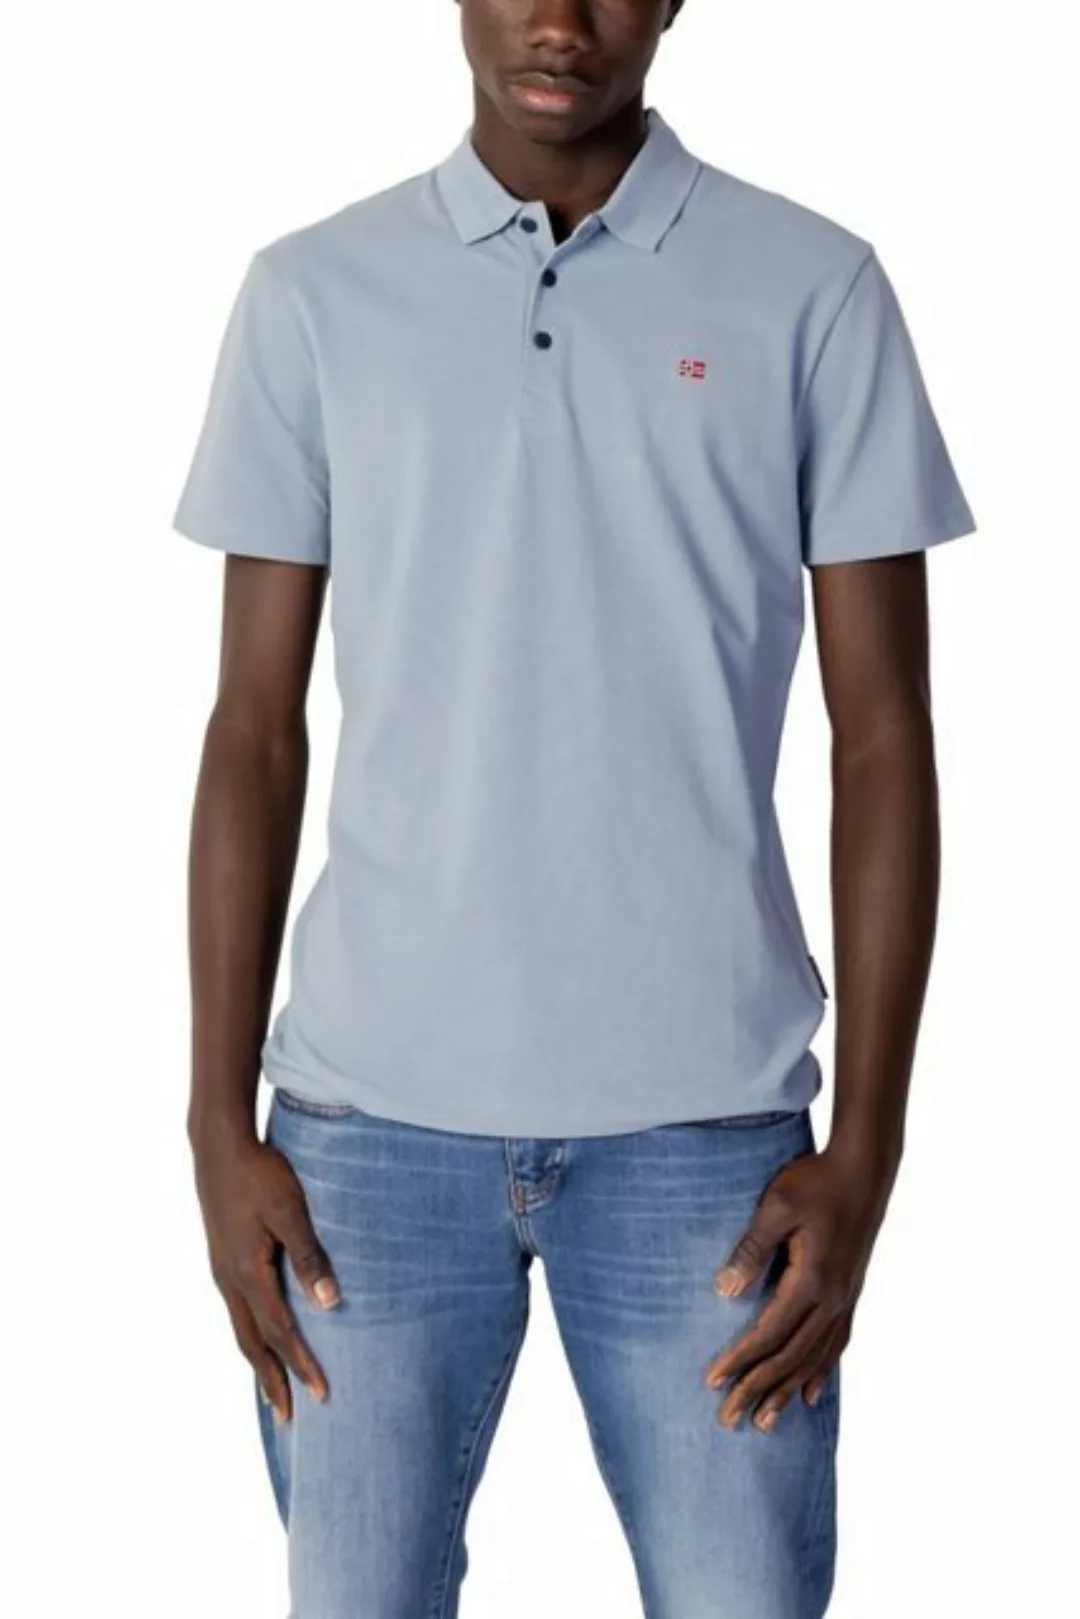 Napapijri Poloshirt NP0A4H8B Herren Poloshirt Ealis SS Sum günstig online kaufen